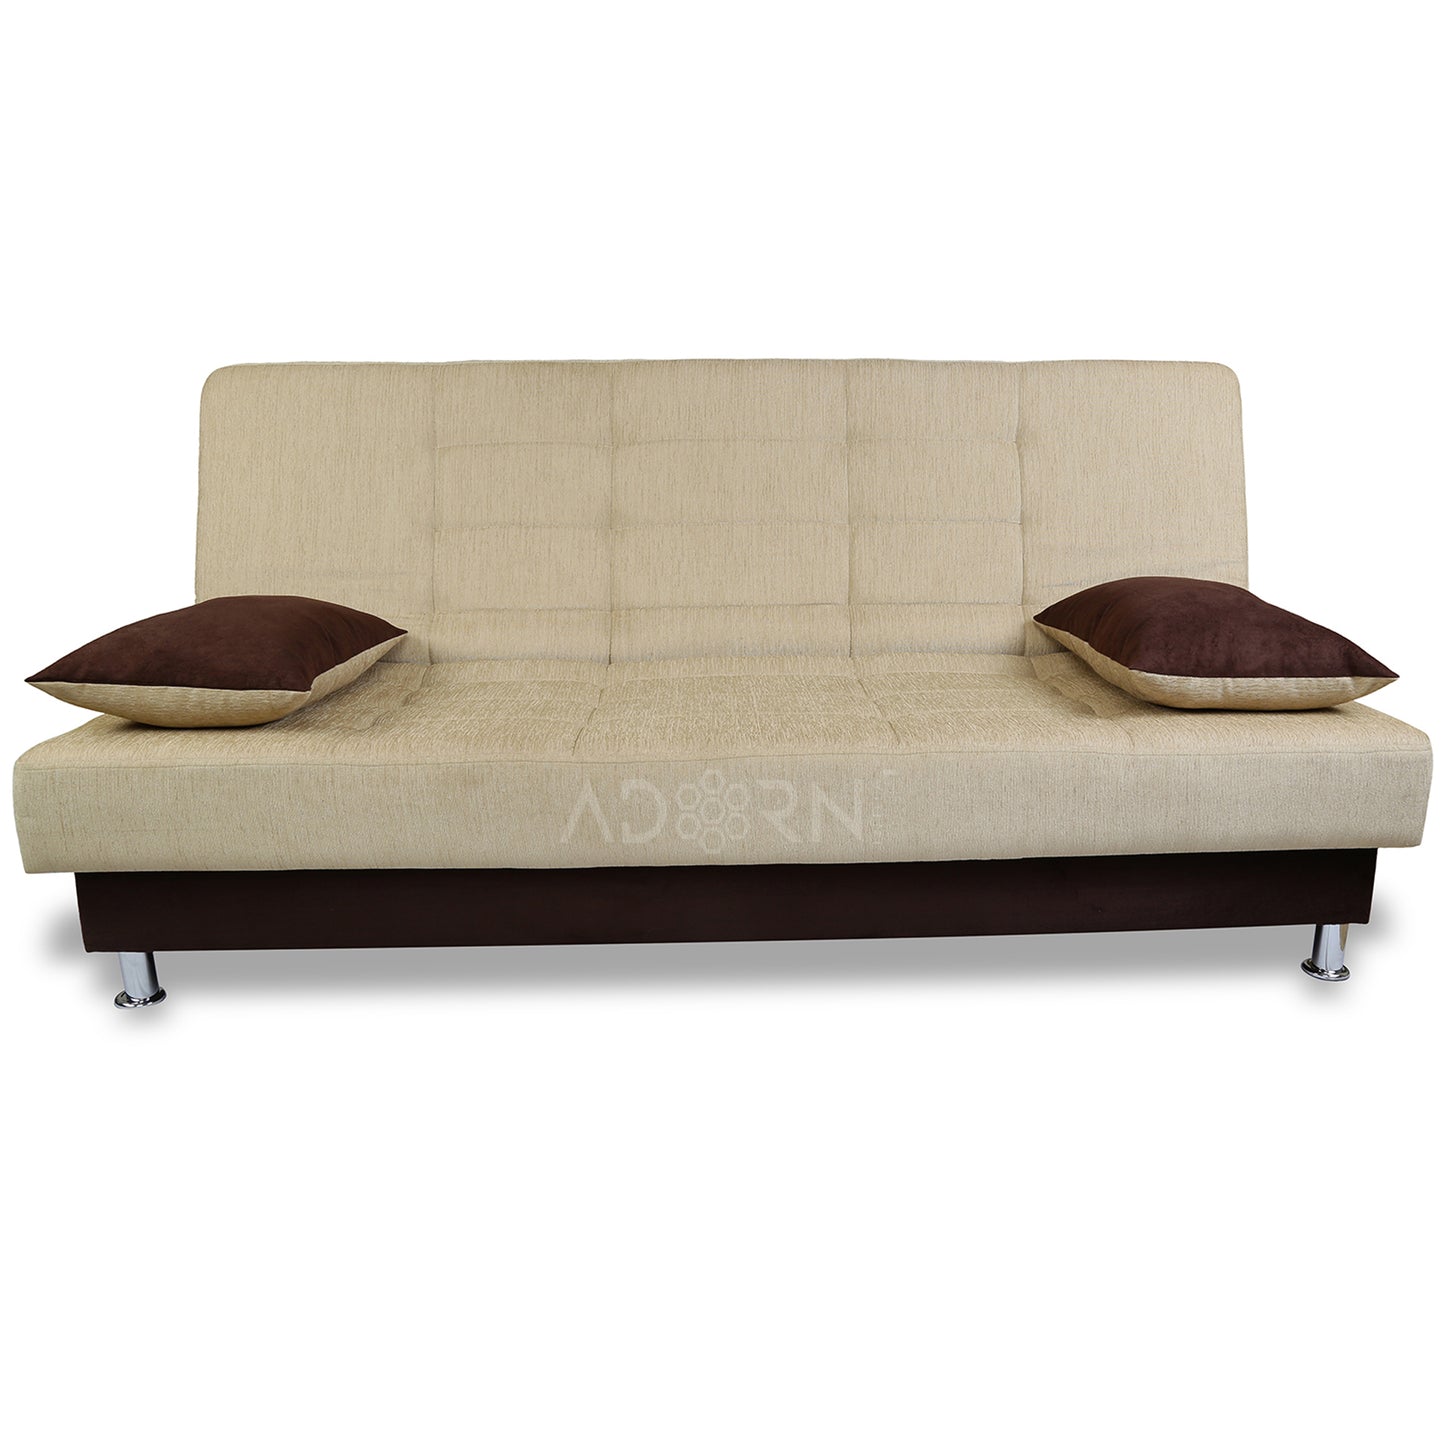 Adorn India Alyssum 3 Seater Sofa Cumbed (Brown & Beige)